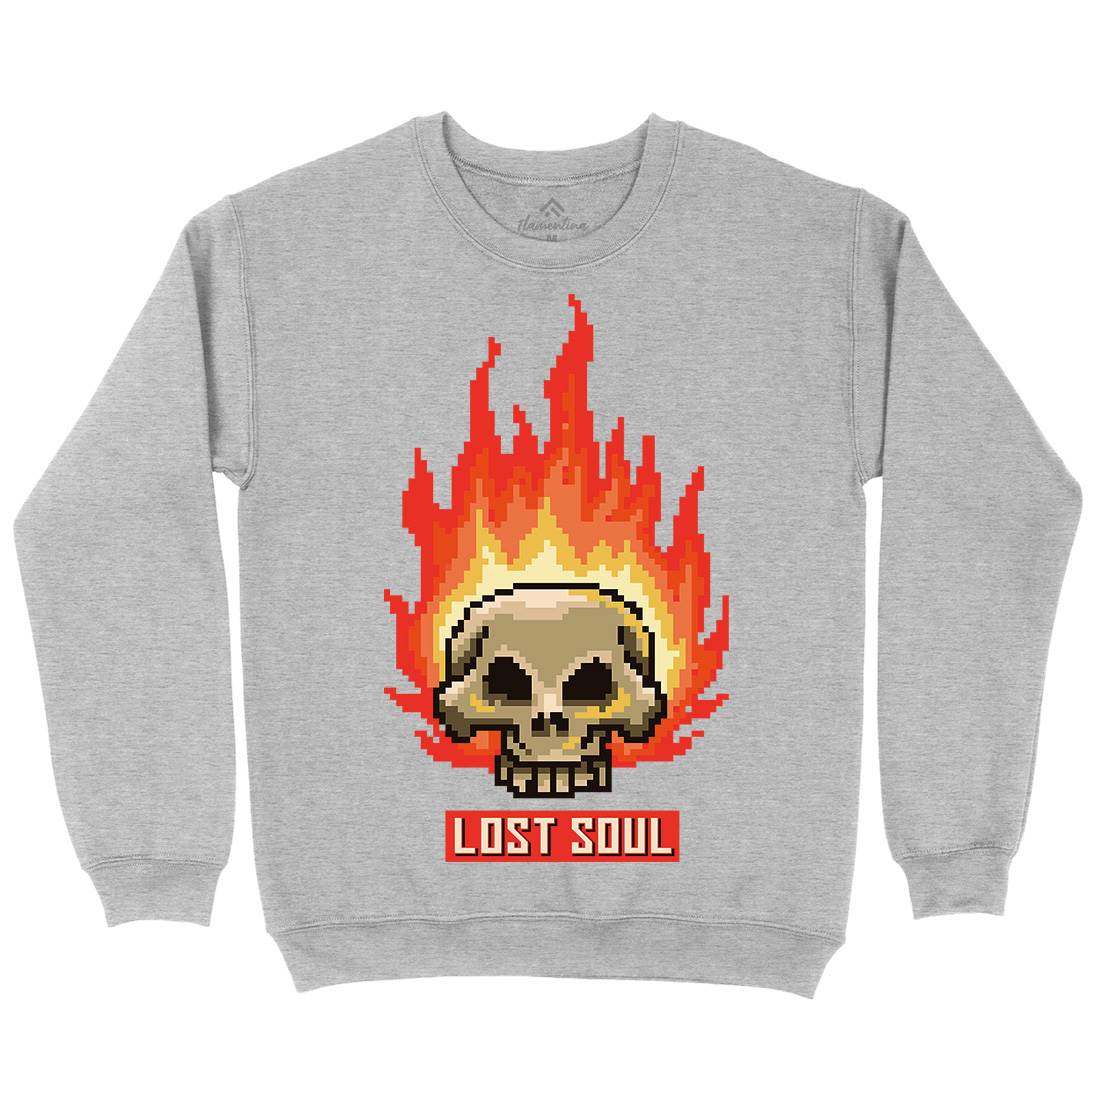 Burning Skull Lost Soul Mens Crew Neck Sweatshirt Retro B889